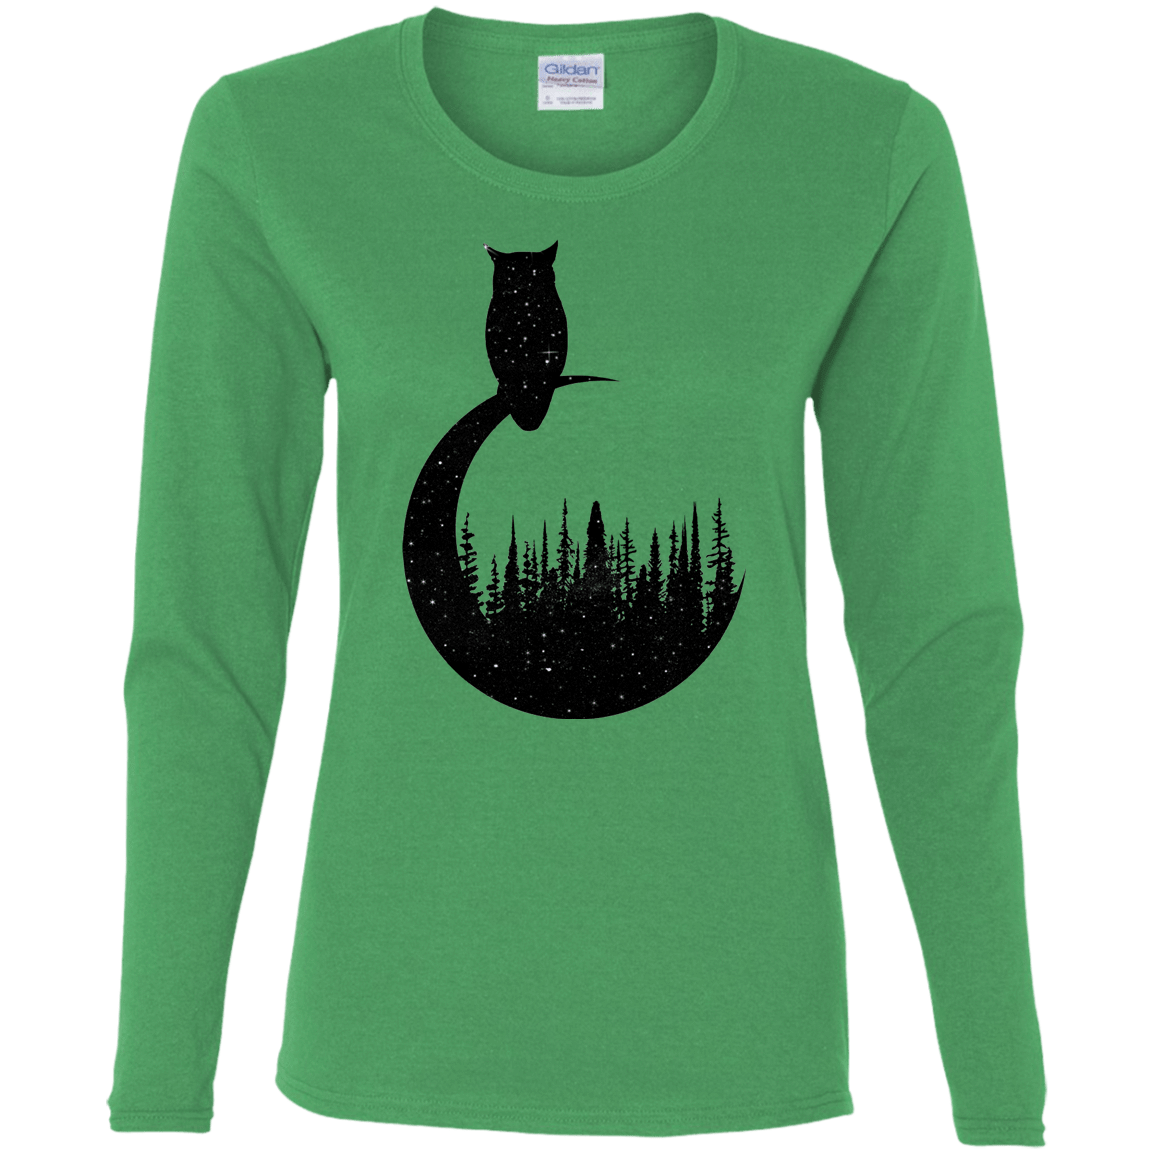 T-Shirts Irish Green / S Perched Owl Women's Long Sleeve T-Shirt